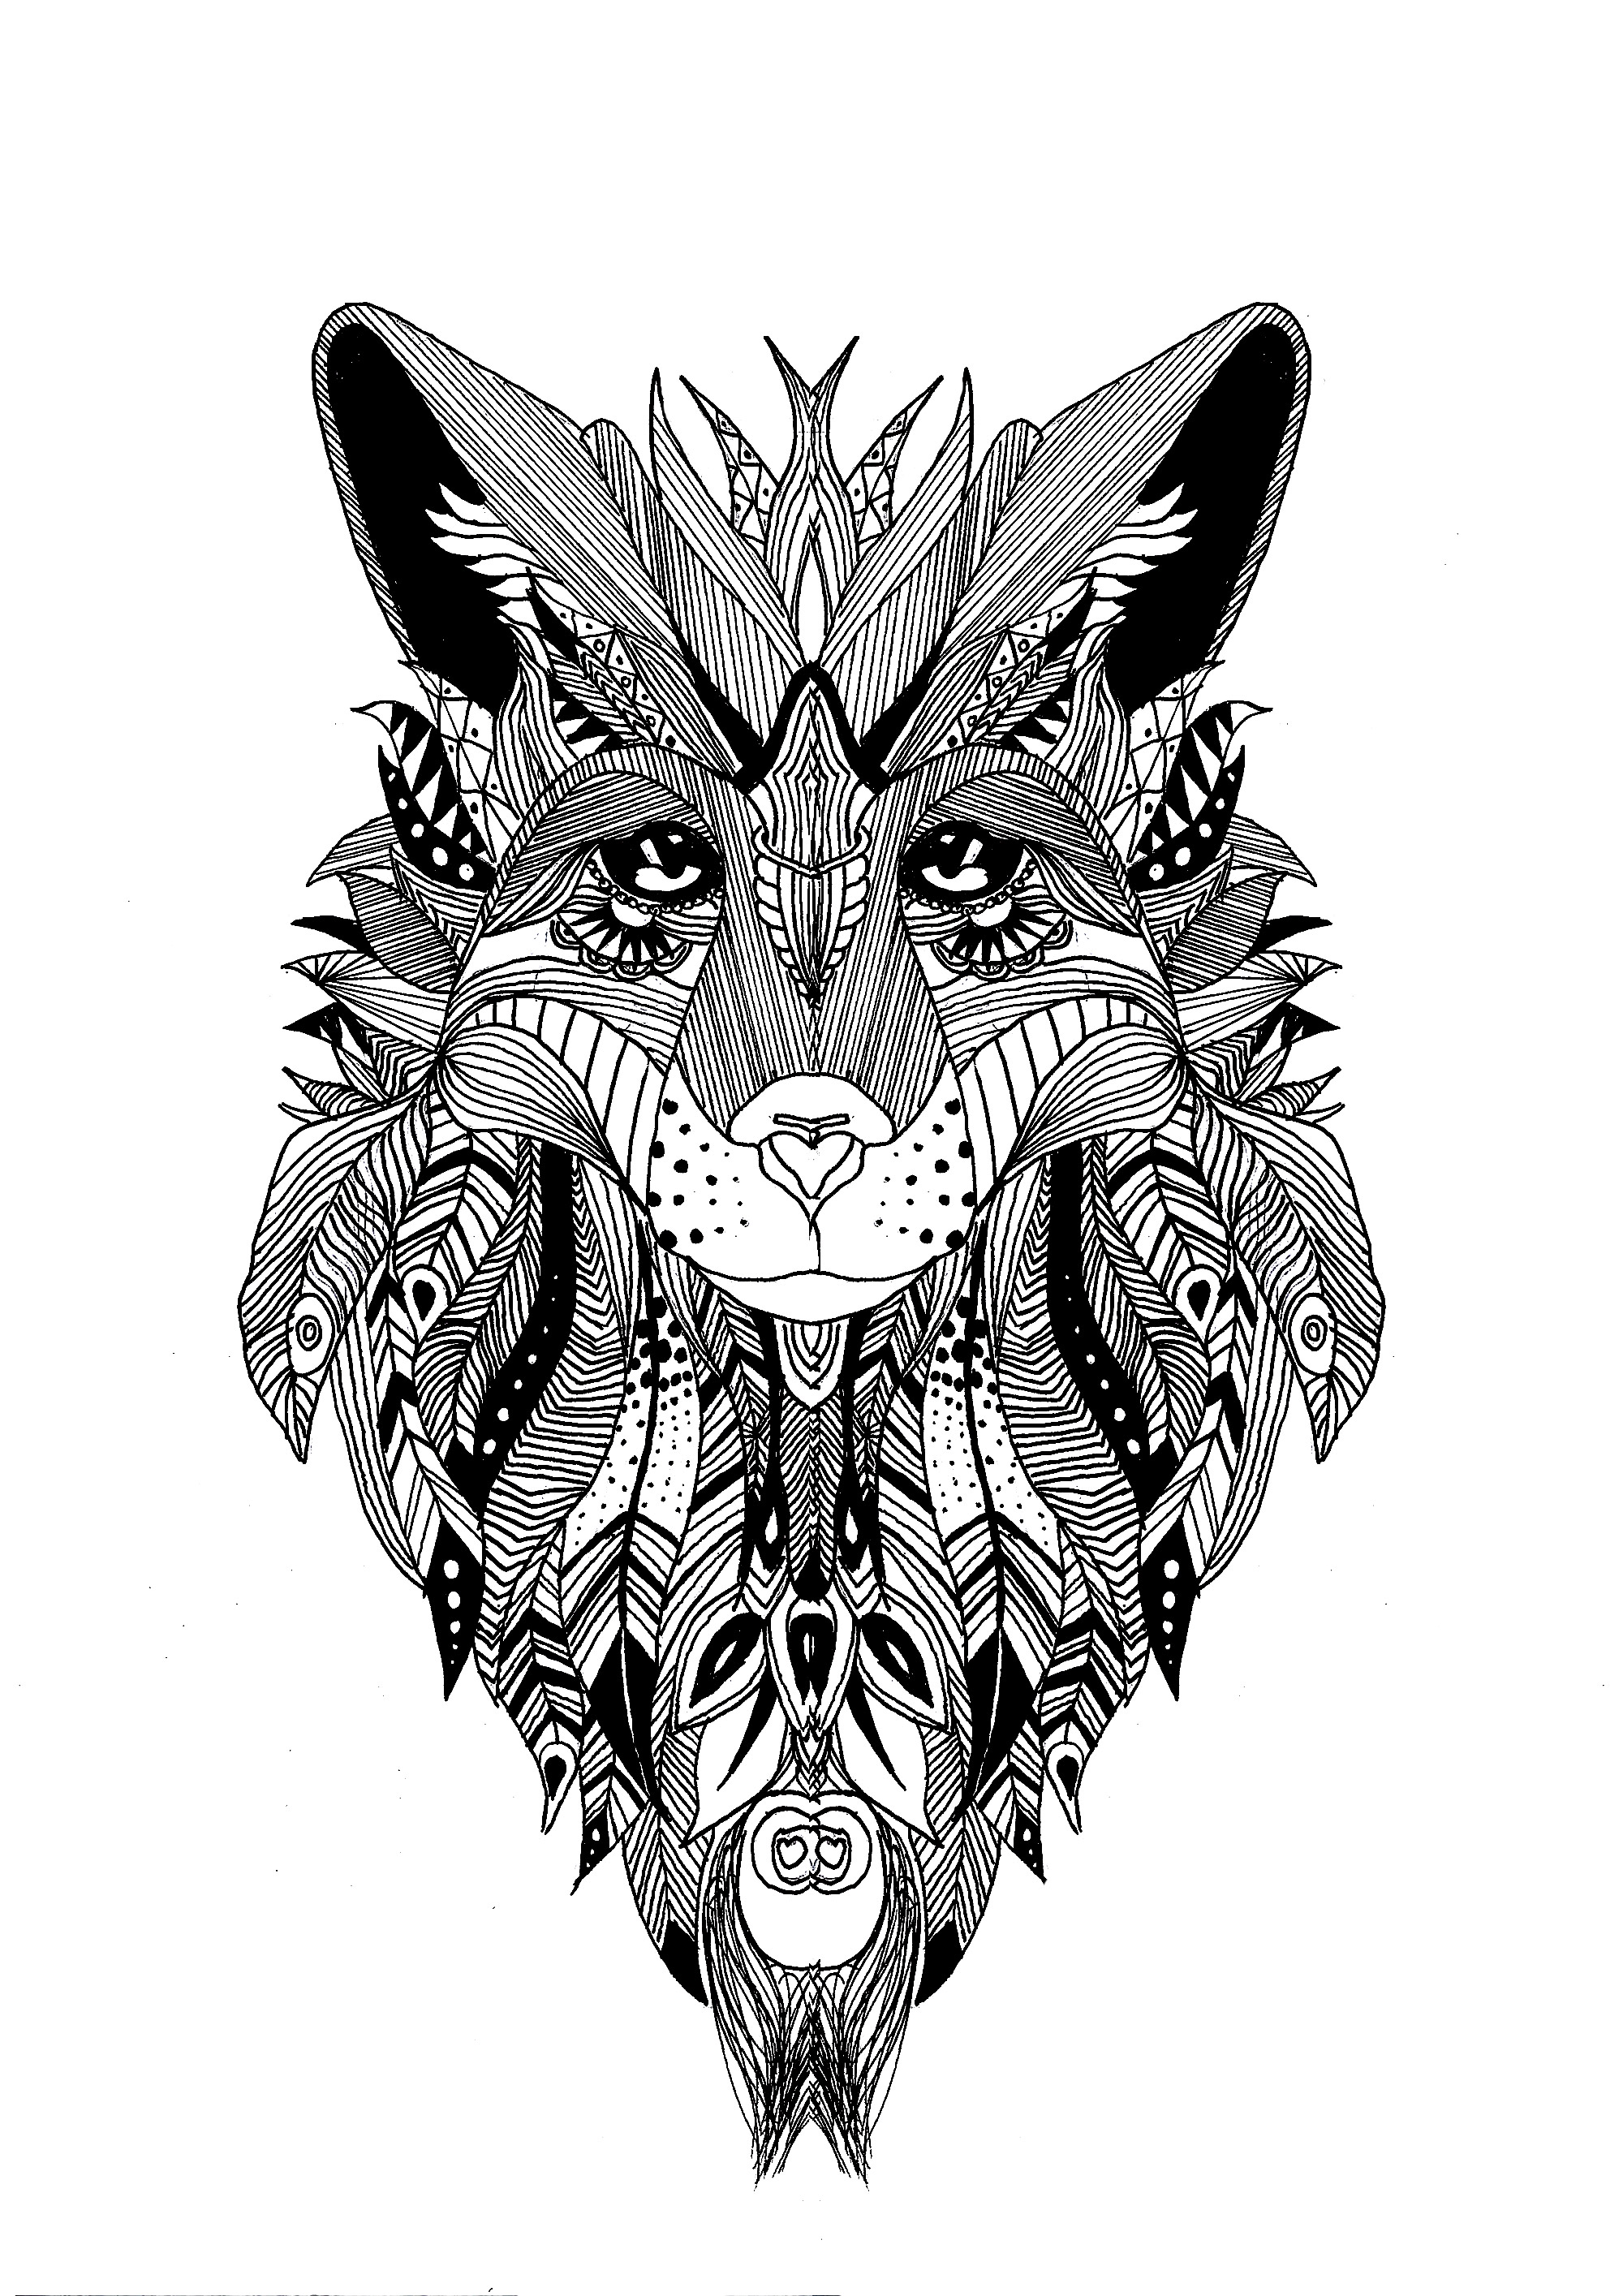 Coloriage d'un loup dessinées avec le style de zentangle et quelque plumes dans sa fourrure.